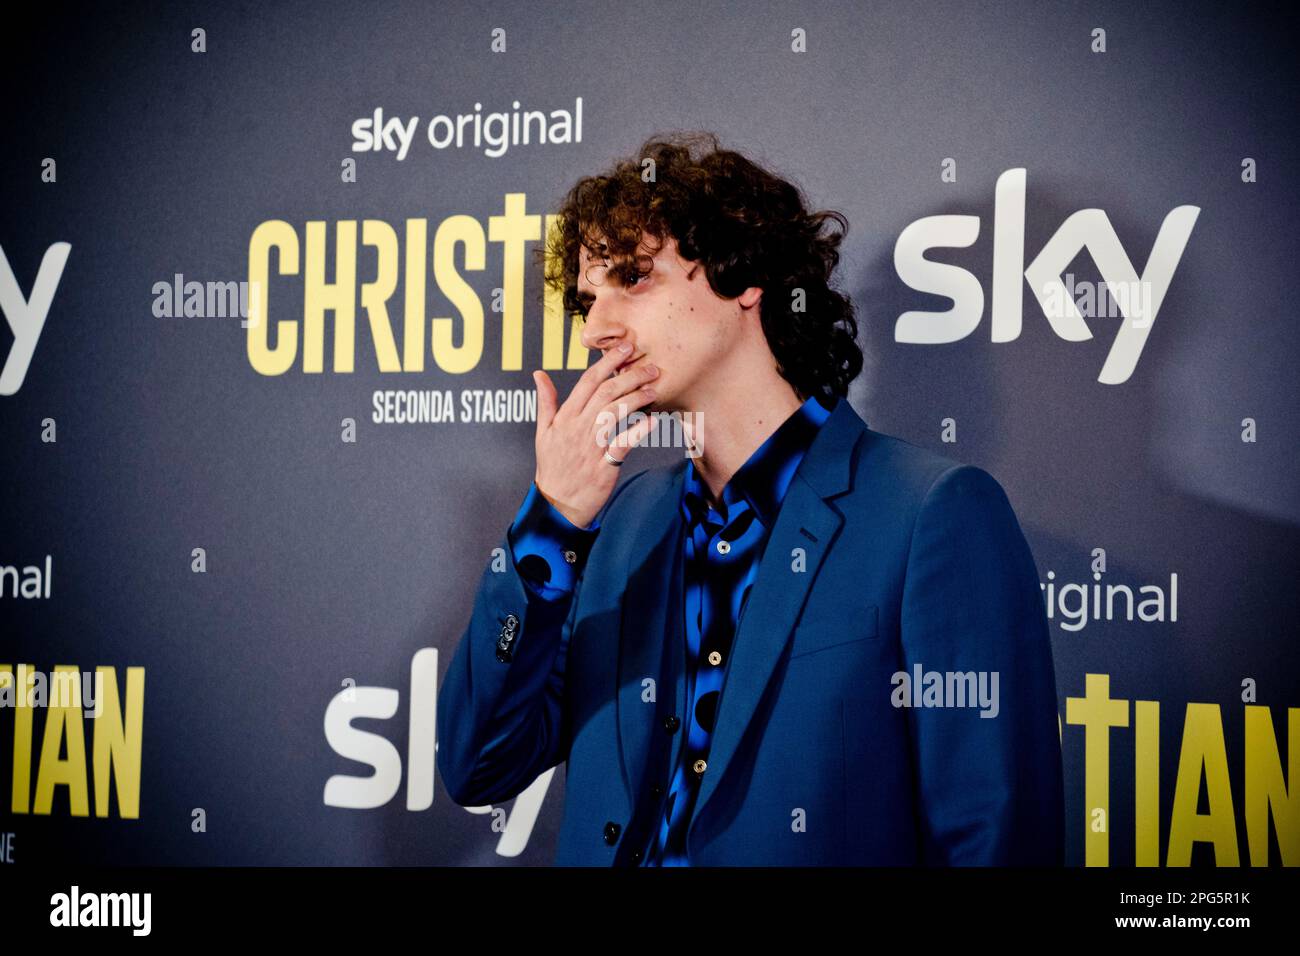 Rome, Italy, 20th March 2023, Antonio Bannò attends the premiere of 'Christian - seconda stagione' at Cinema Barberini (Photo credits: Giovanna Onofri Stock Photo